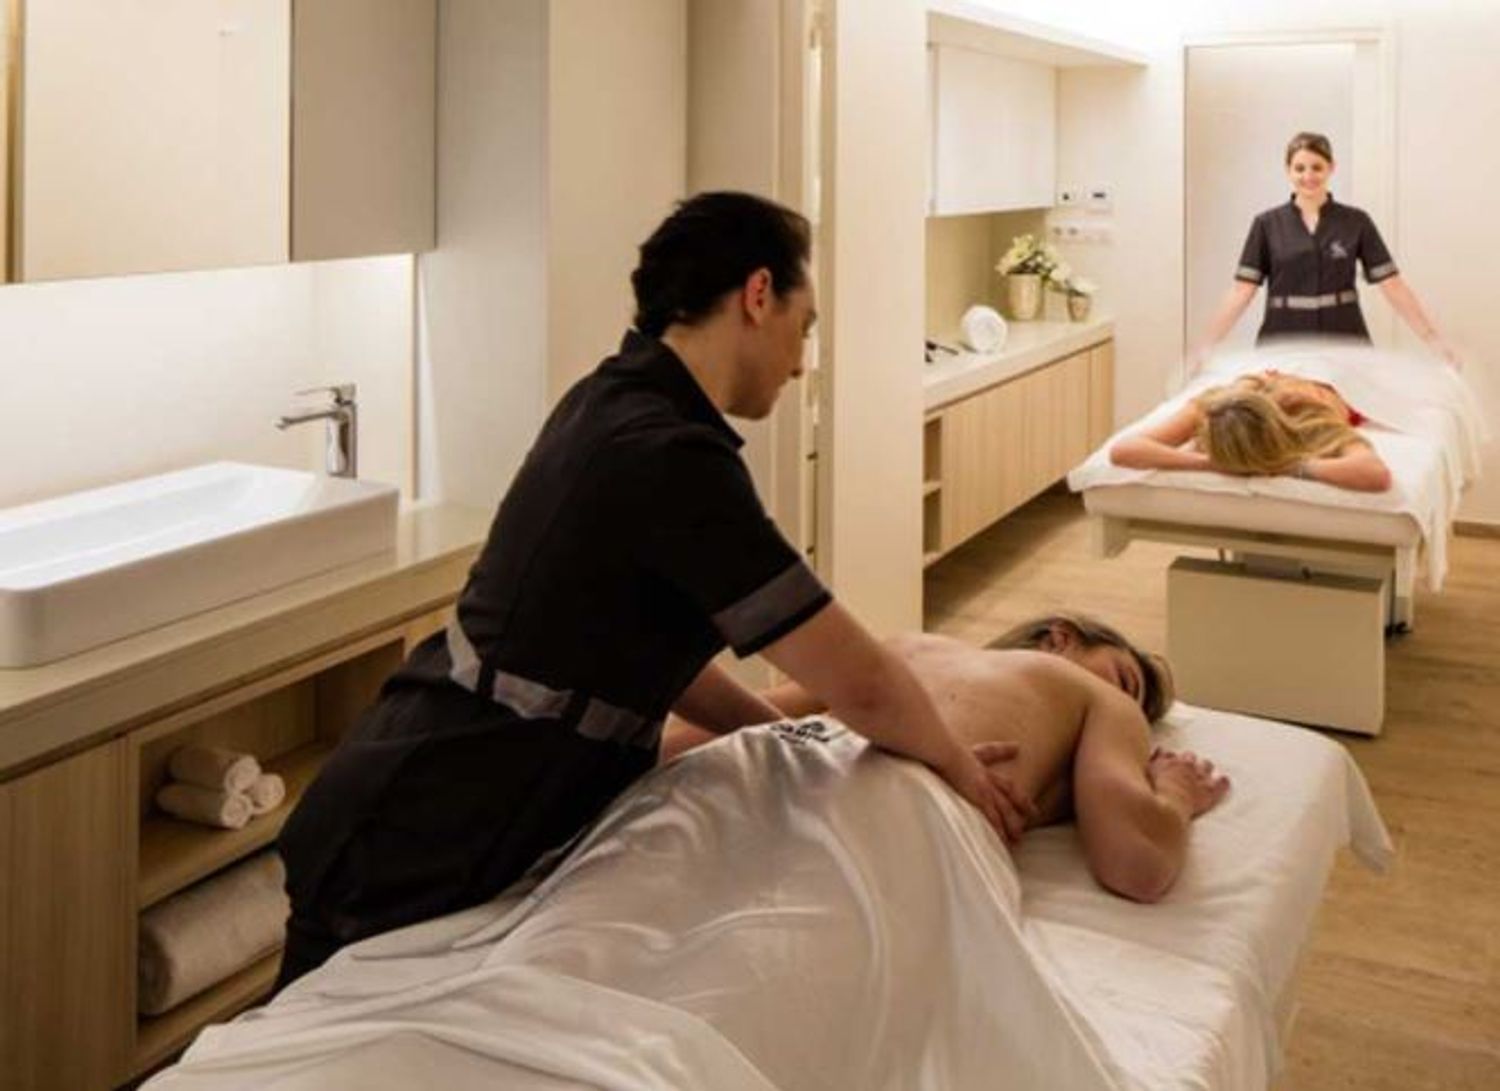 Le SPA propose notamment des massages à ses clients